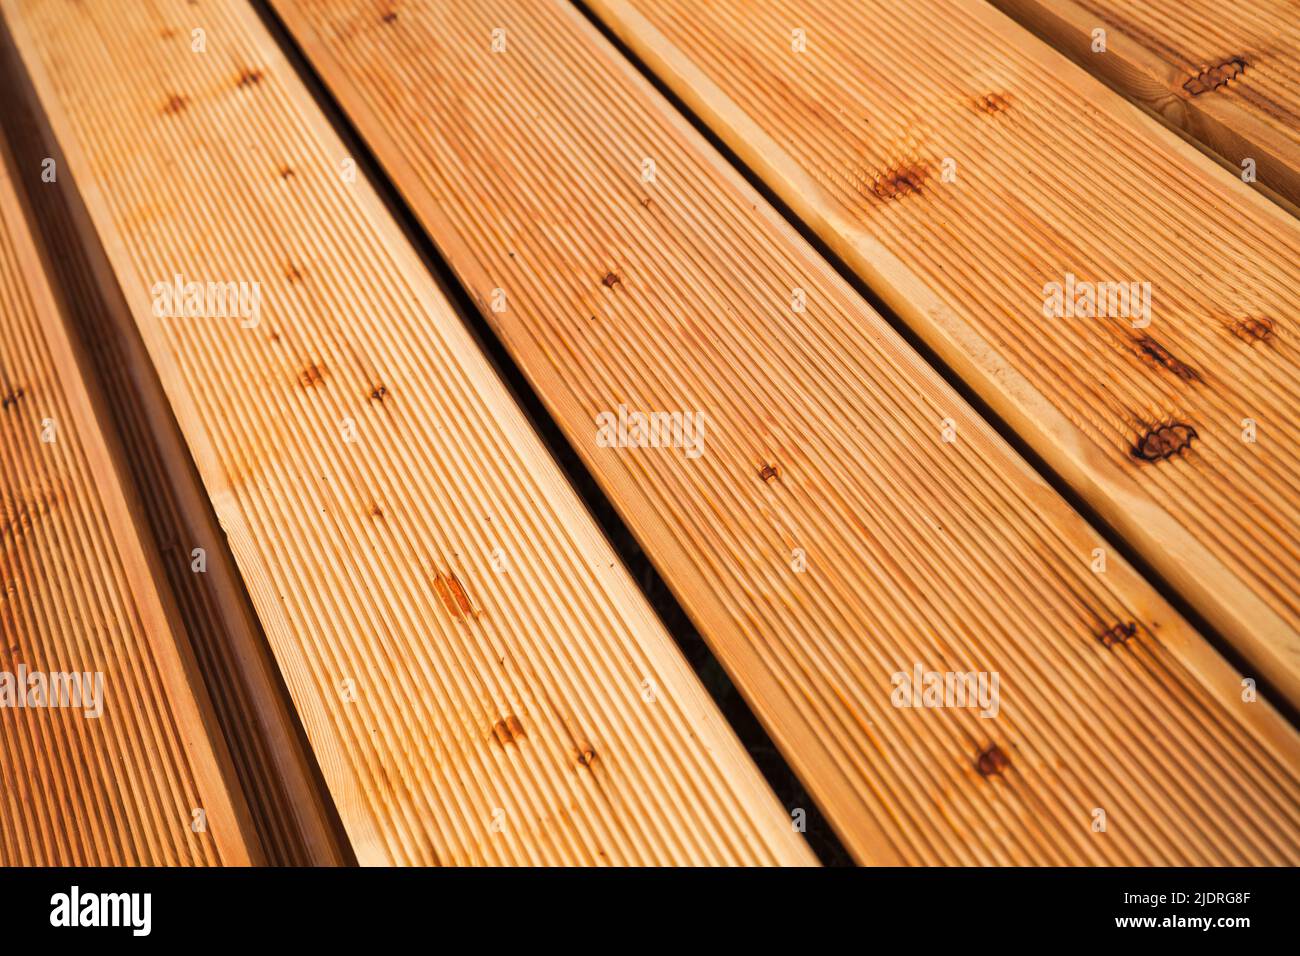 Lärche Deck Boards Bodenbelag, Nahaufnahme Foto mit perspektivischen Effekt Stockfoto